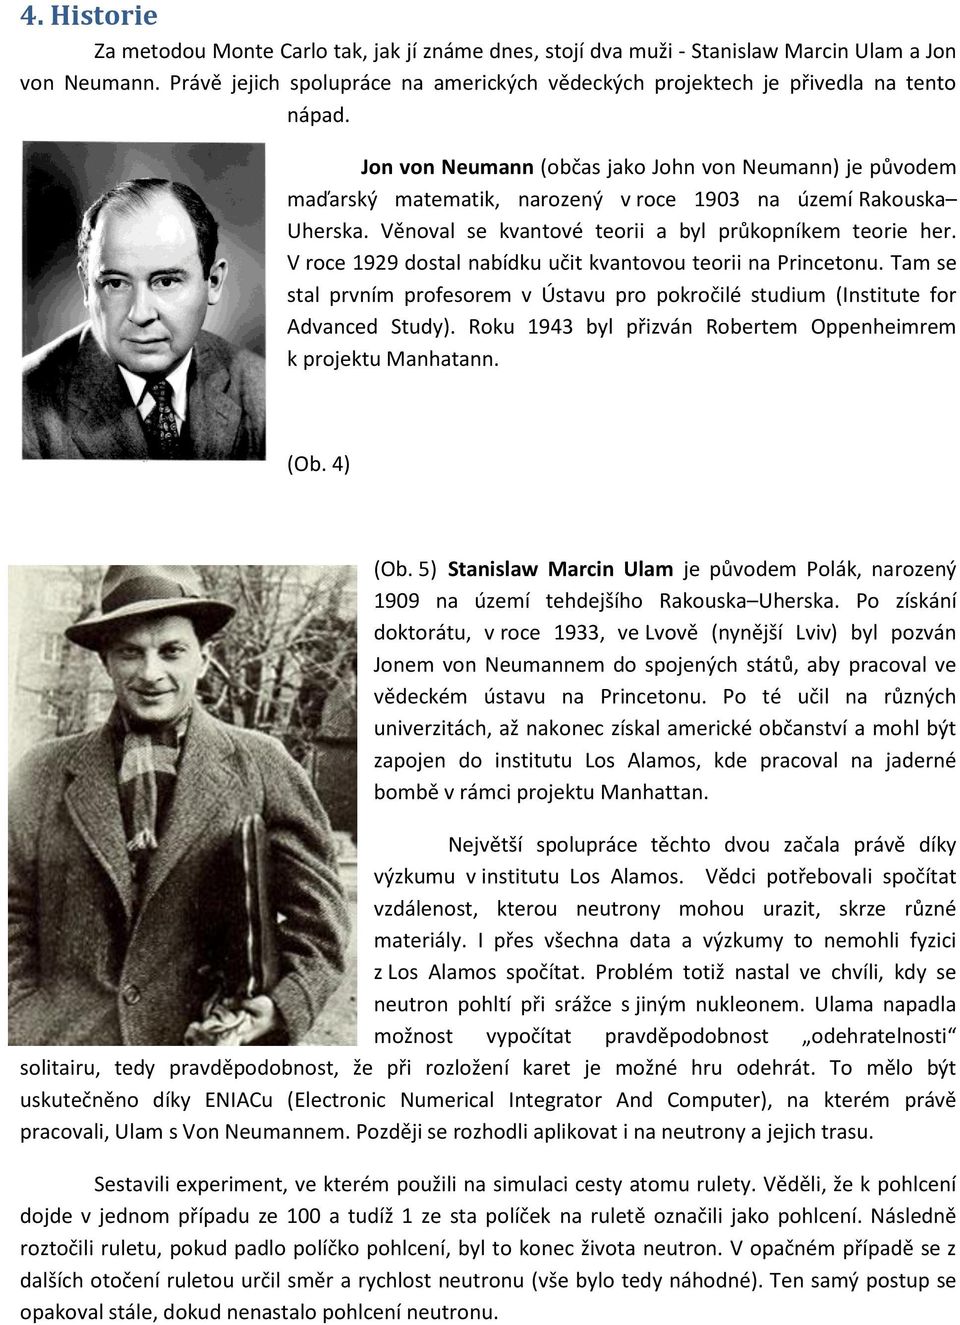 Jon von Neumann (občas jako John von Neumann) je původem maďarský matematik, narozený v roce 1903 na území Rakouska Uherska. Věnoval se kvantové teorii a byl průkopníkem teorie her.